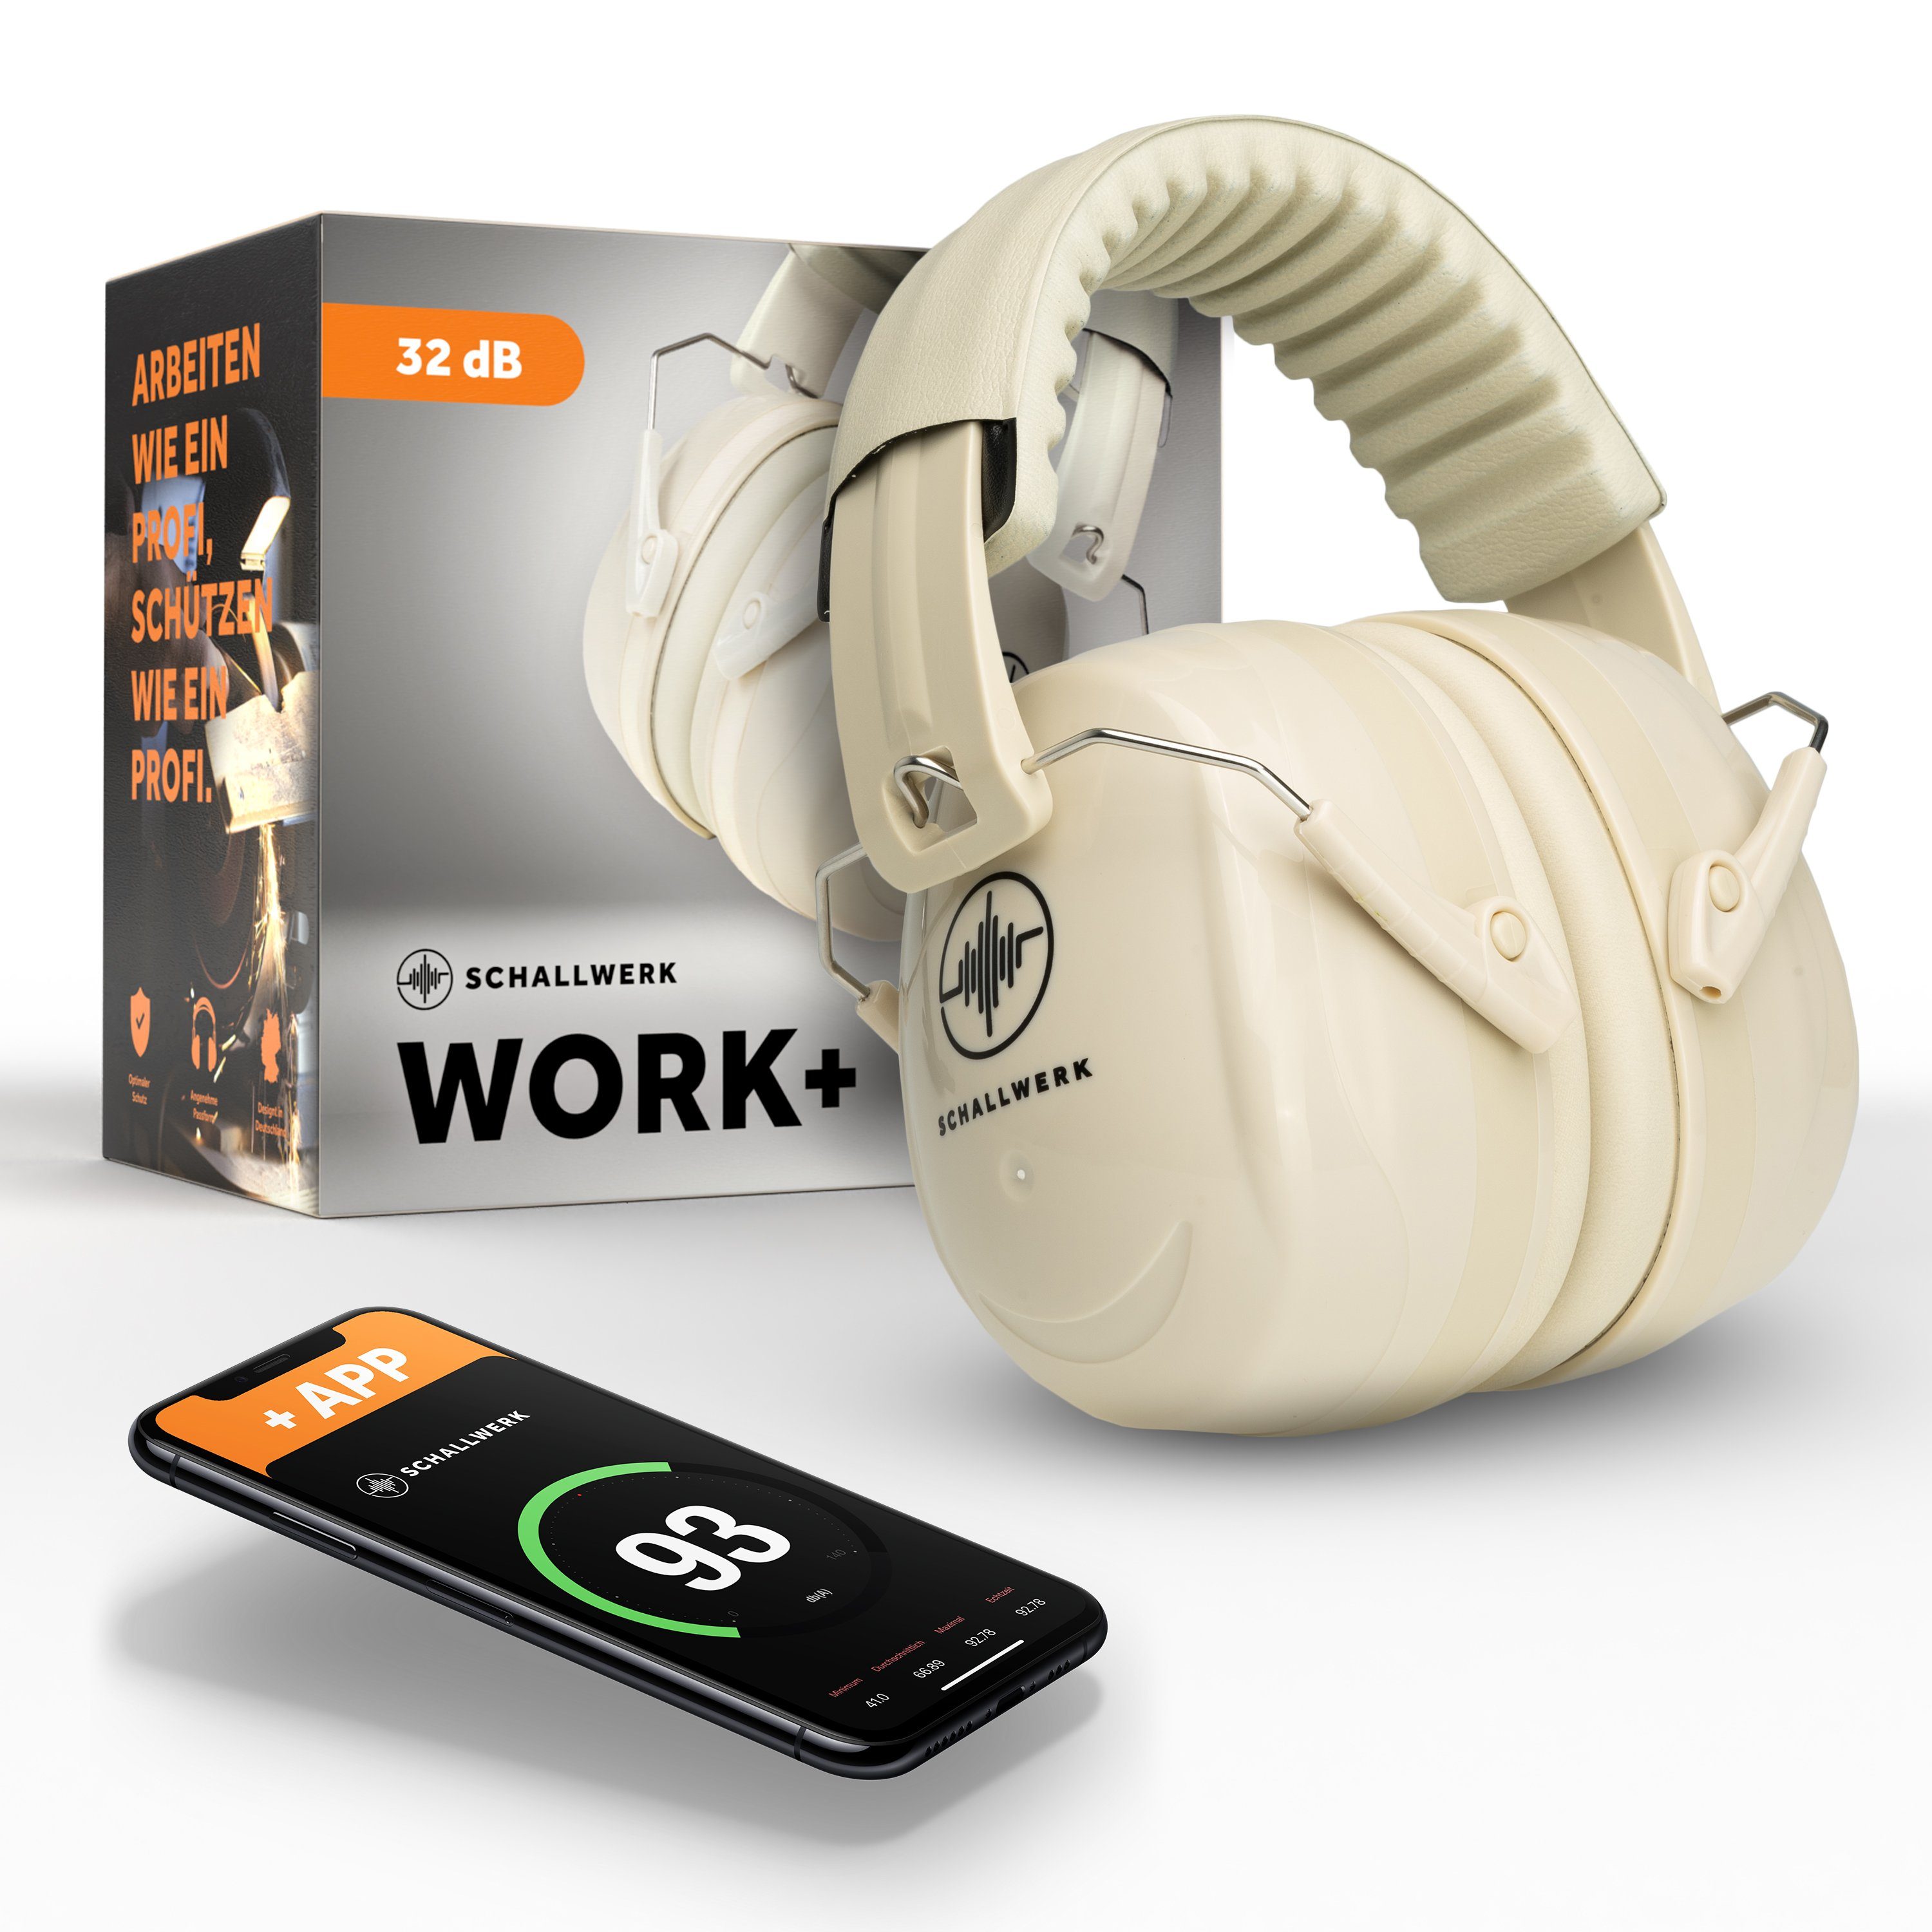 Schallwerk Kapselgehörschutz SCHALLWERK ® Work+, Arbeitsgehörschutz – größenverstellbar beige